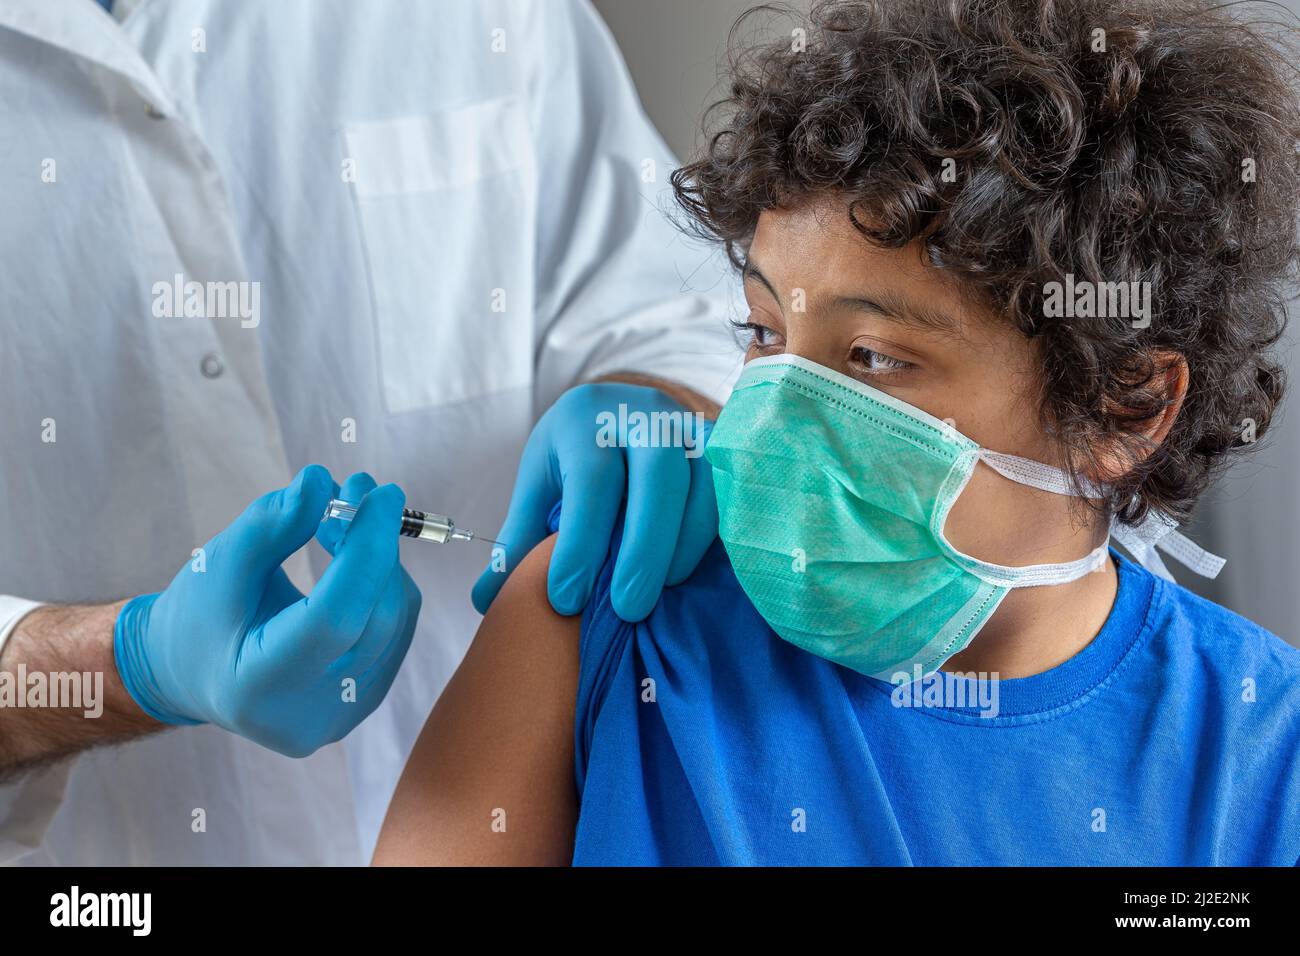 Männlicher Arzt in schützenden Gesichtsmaske Latexhandschuhe geben intramuskuläre Impfung geschützten Arm des Patienten Stockfoto